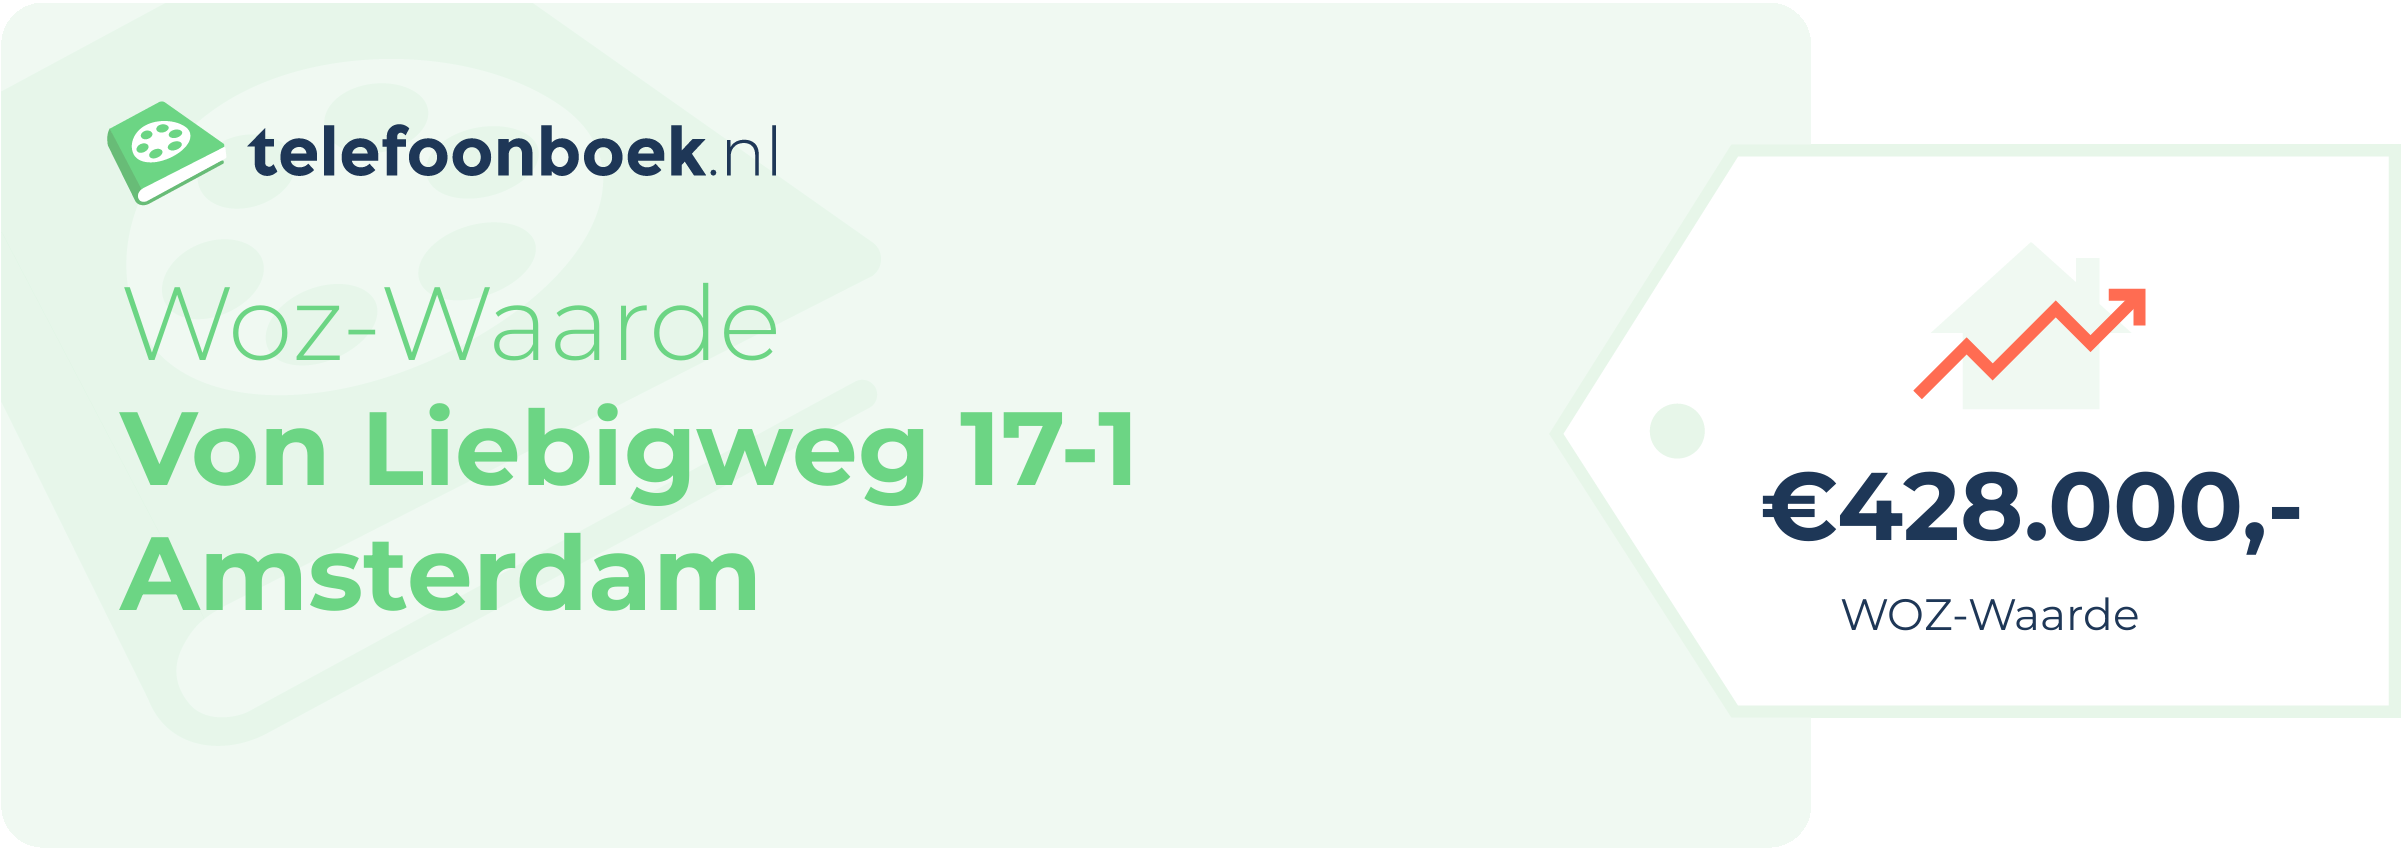 WOZ-waarde Von Liebigweg 17-1 Amsterdam